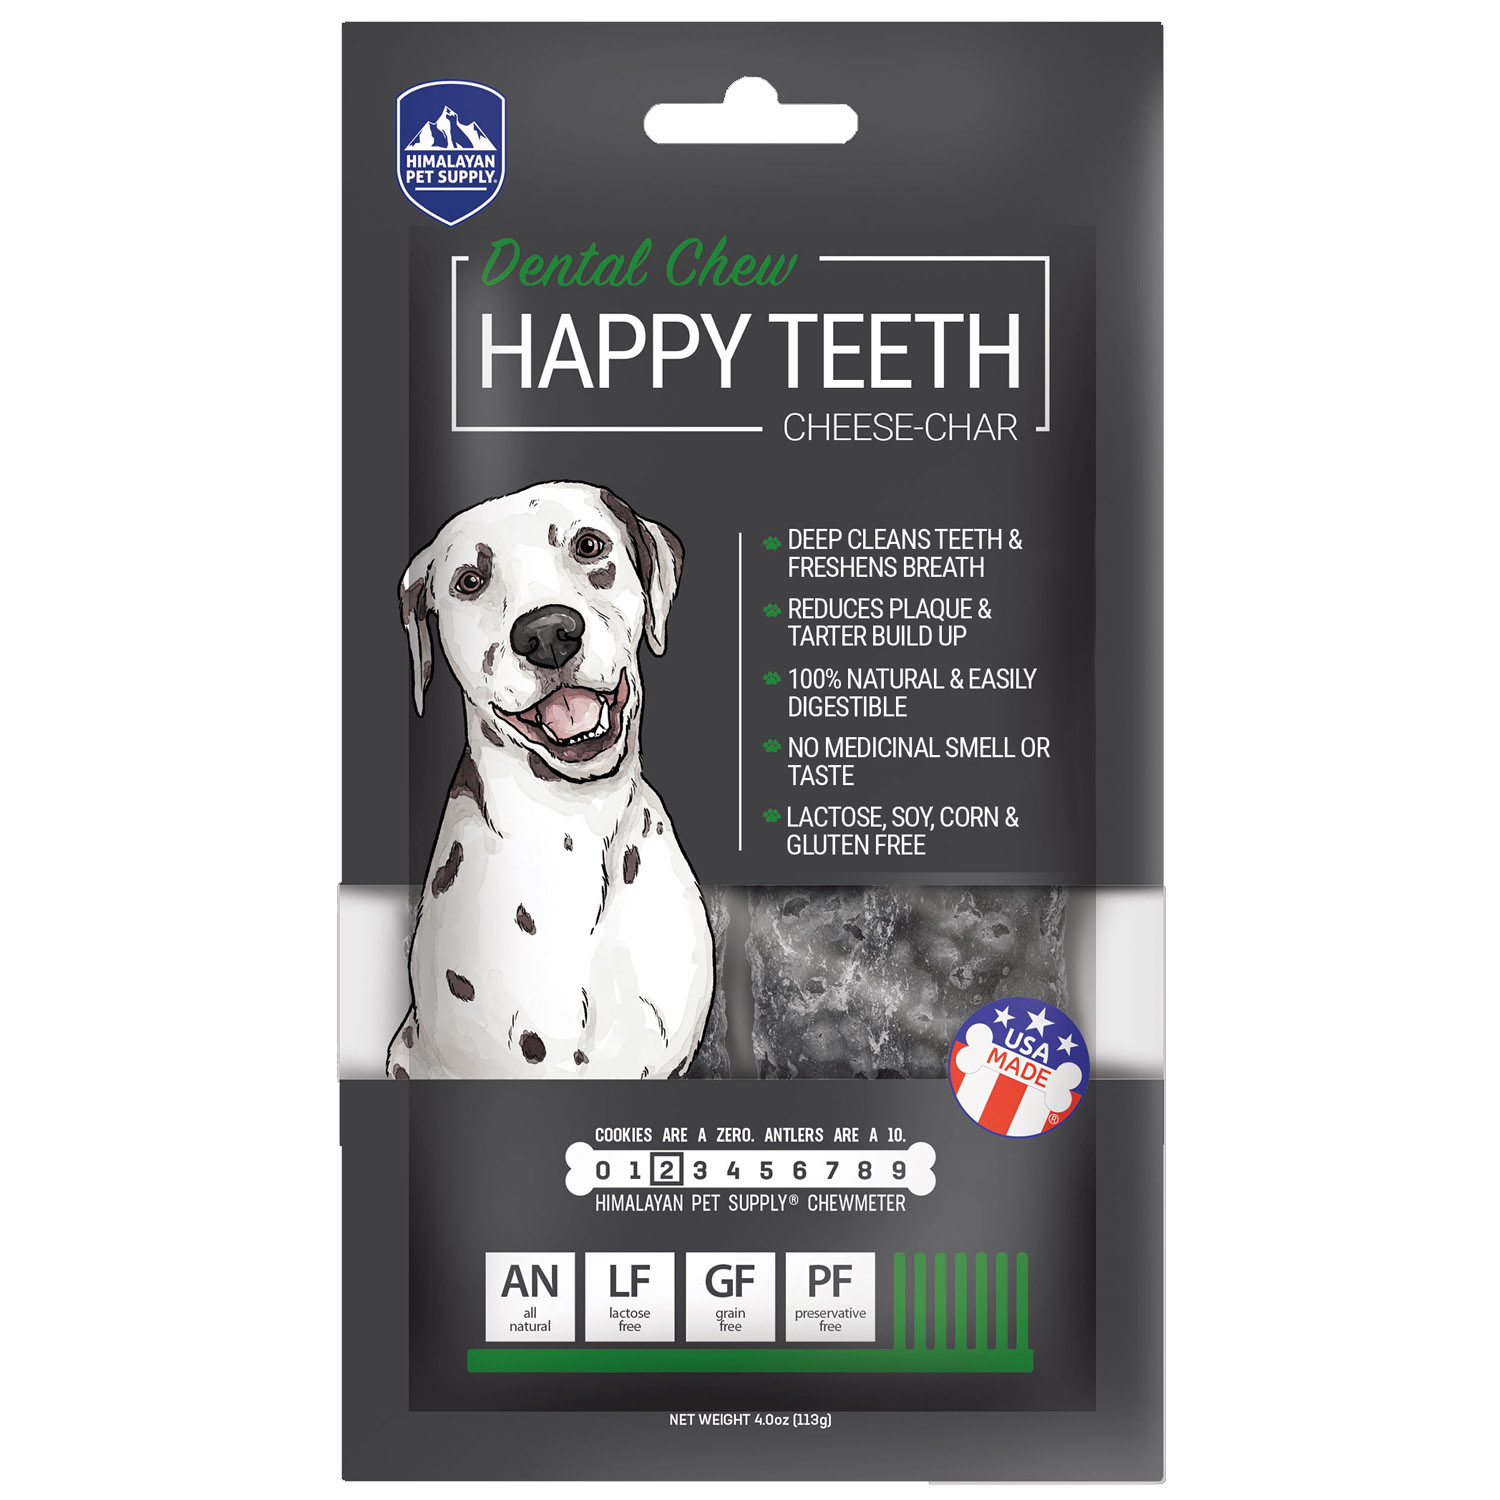 Happy Teeth Dental Chew - Cheese-Char